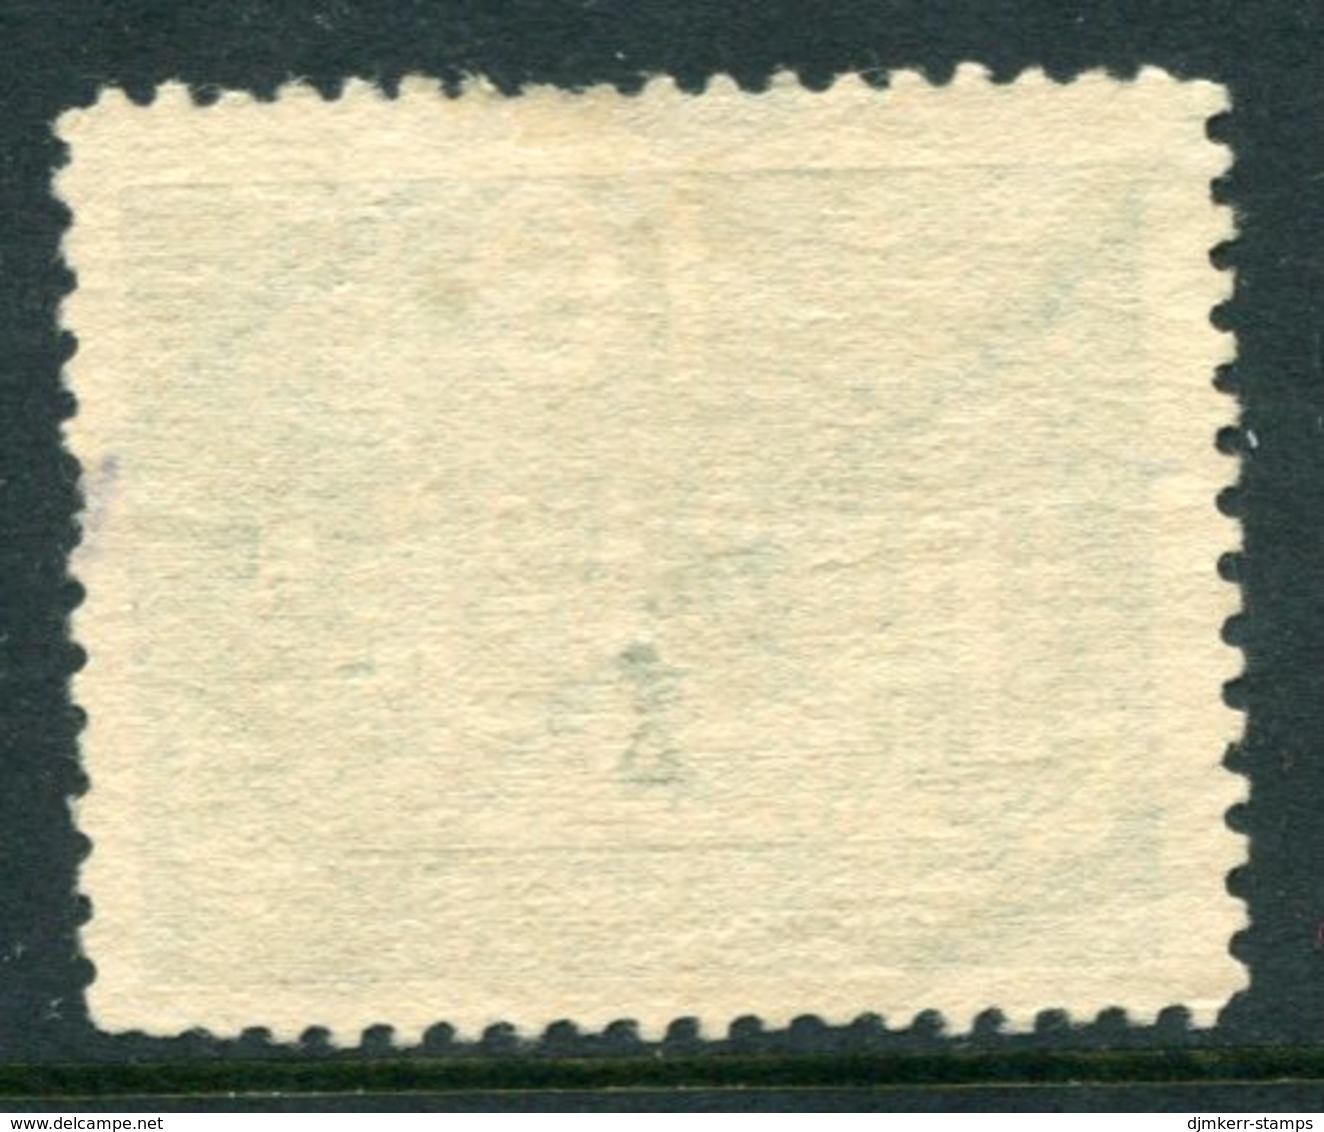 SWEDEN 1924 UPU Congress 10 Öre With Lines Watermark Used, .  Michel 145x - Gebruikt